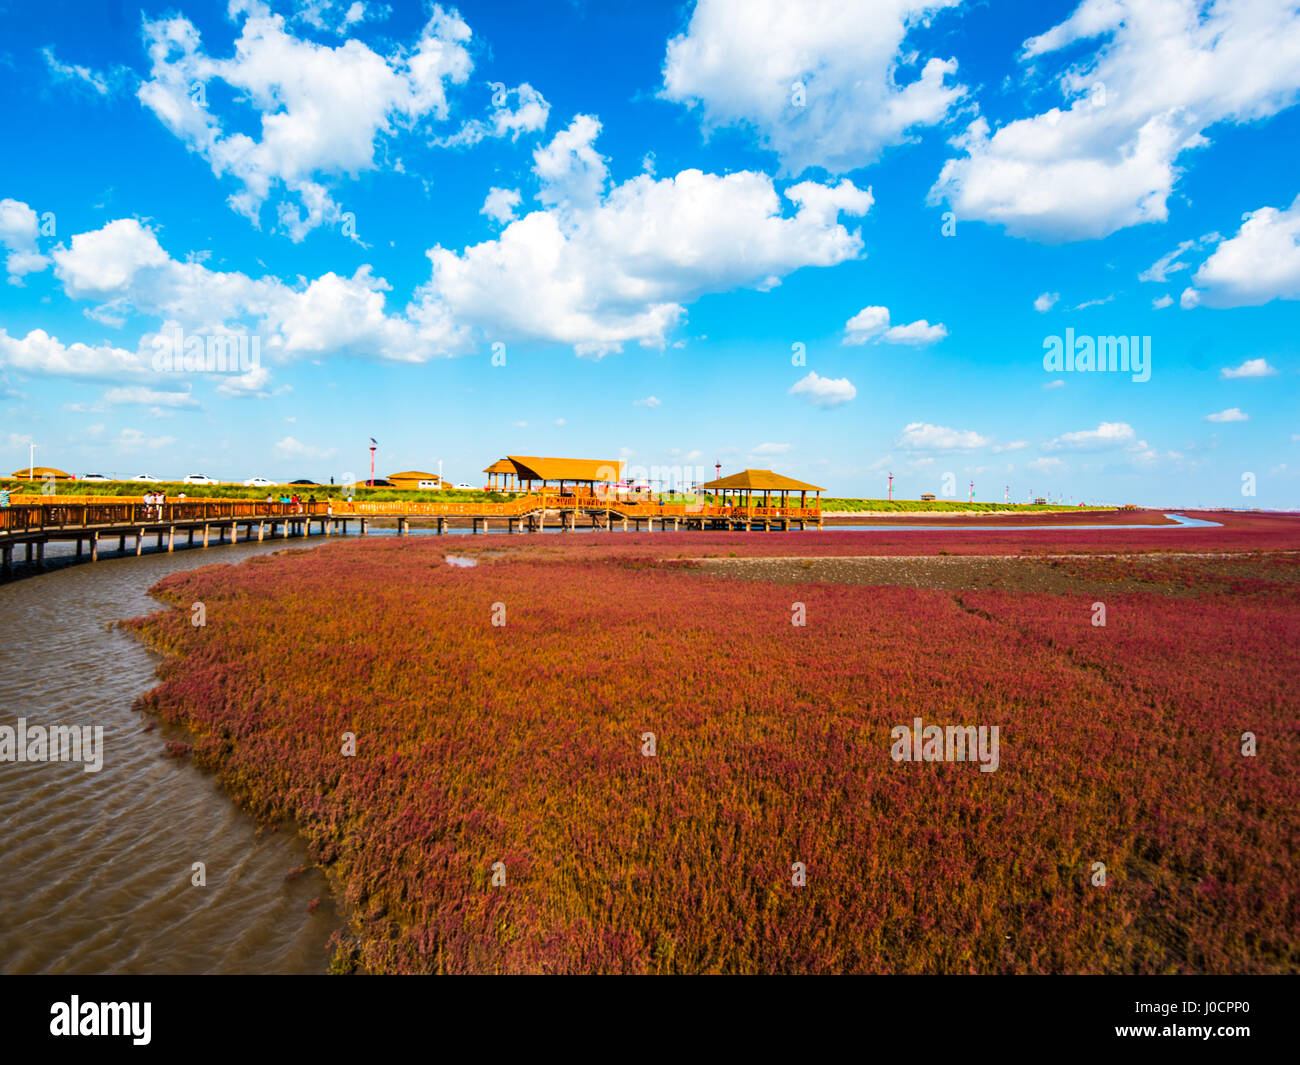 PANJIN, Liaoning, Chine - 29AUG2016 : la plage rouge, situé dans le Delta du Liaohe à 30km au sud ouest de Zhenjiang City, Liaoning, Chine. La plage est une m Banque D'Images